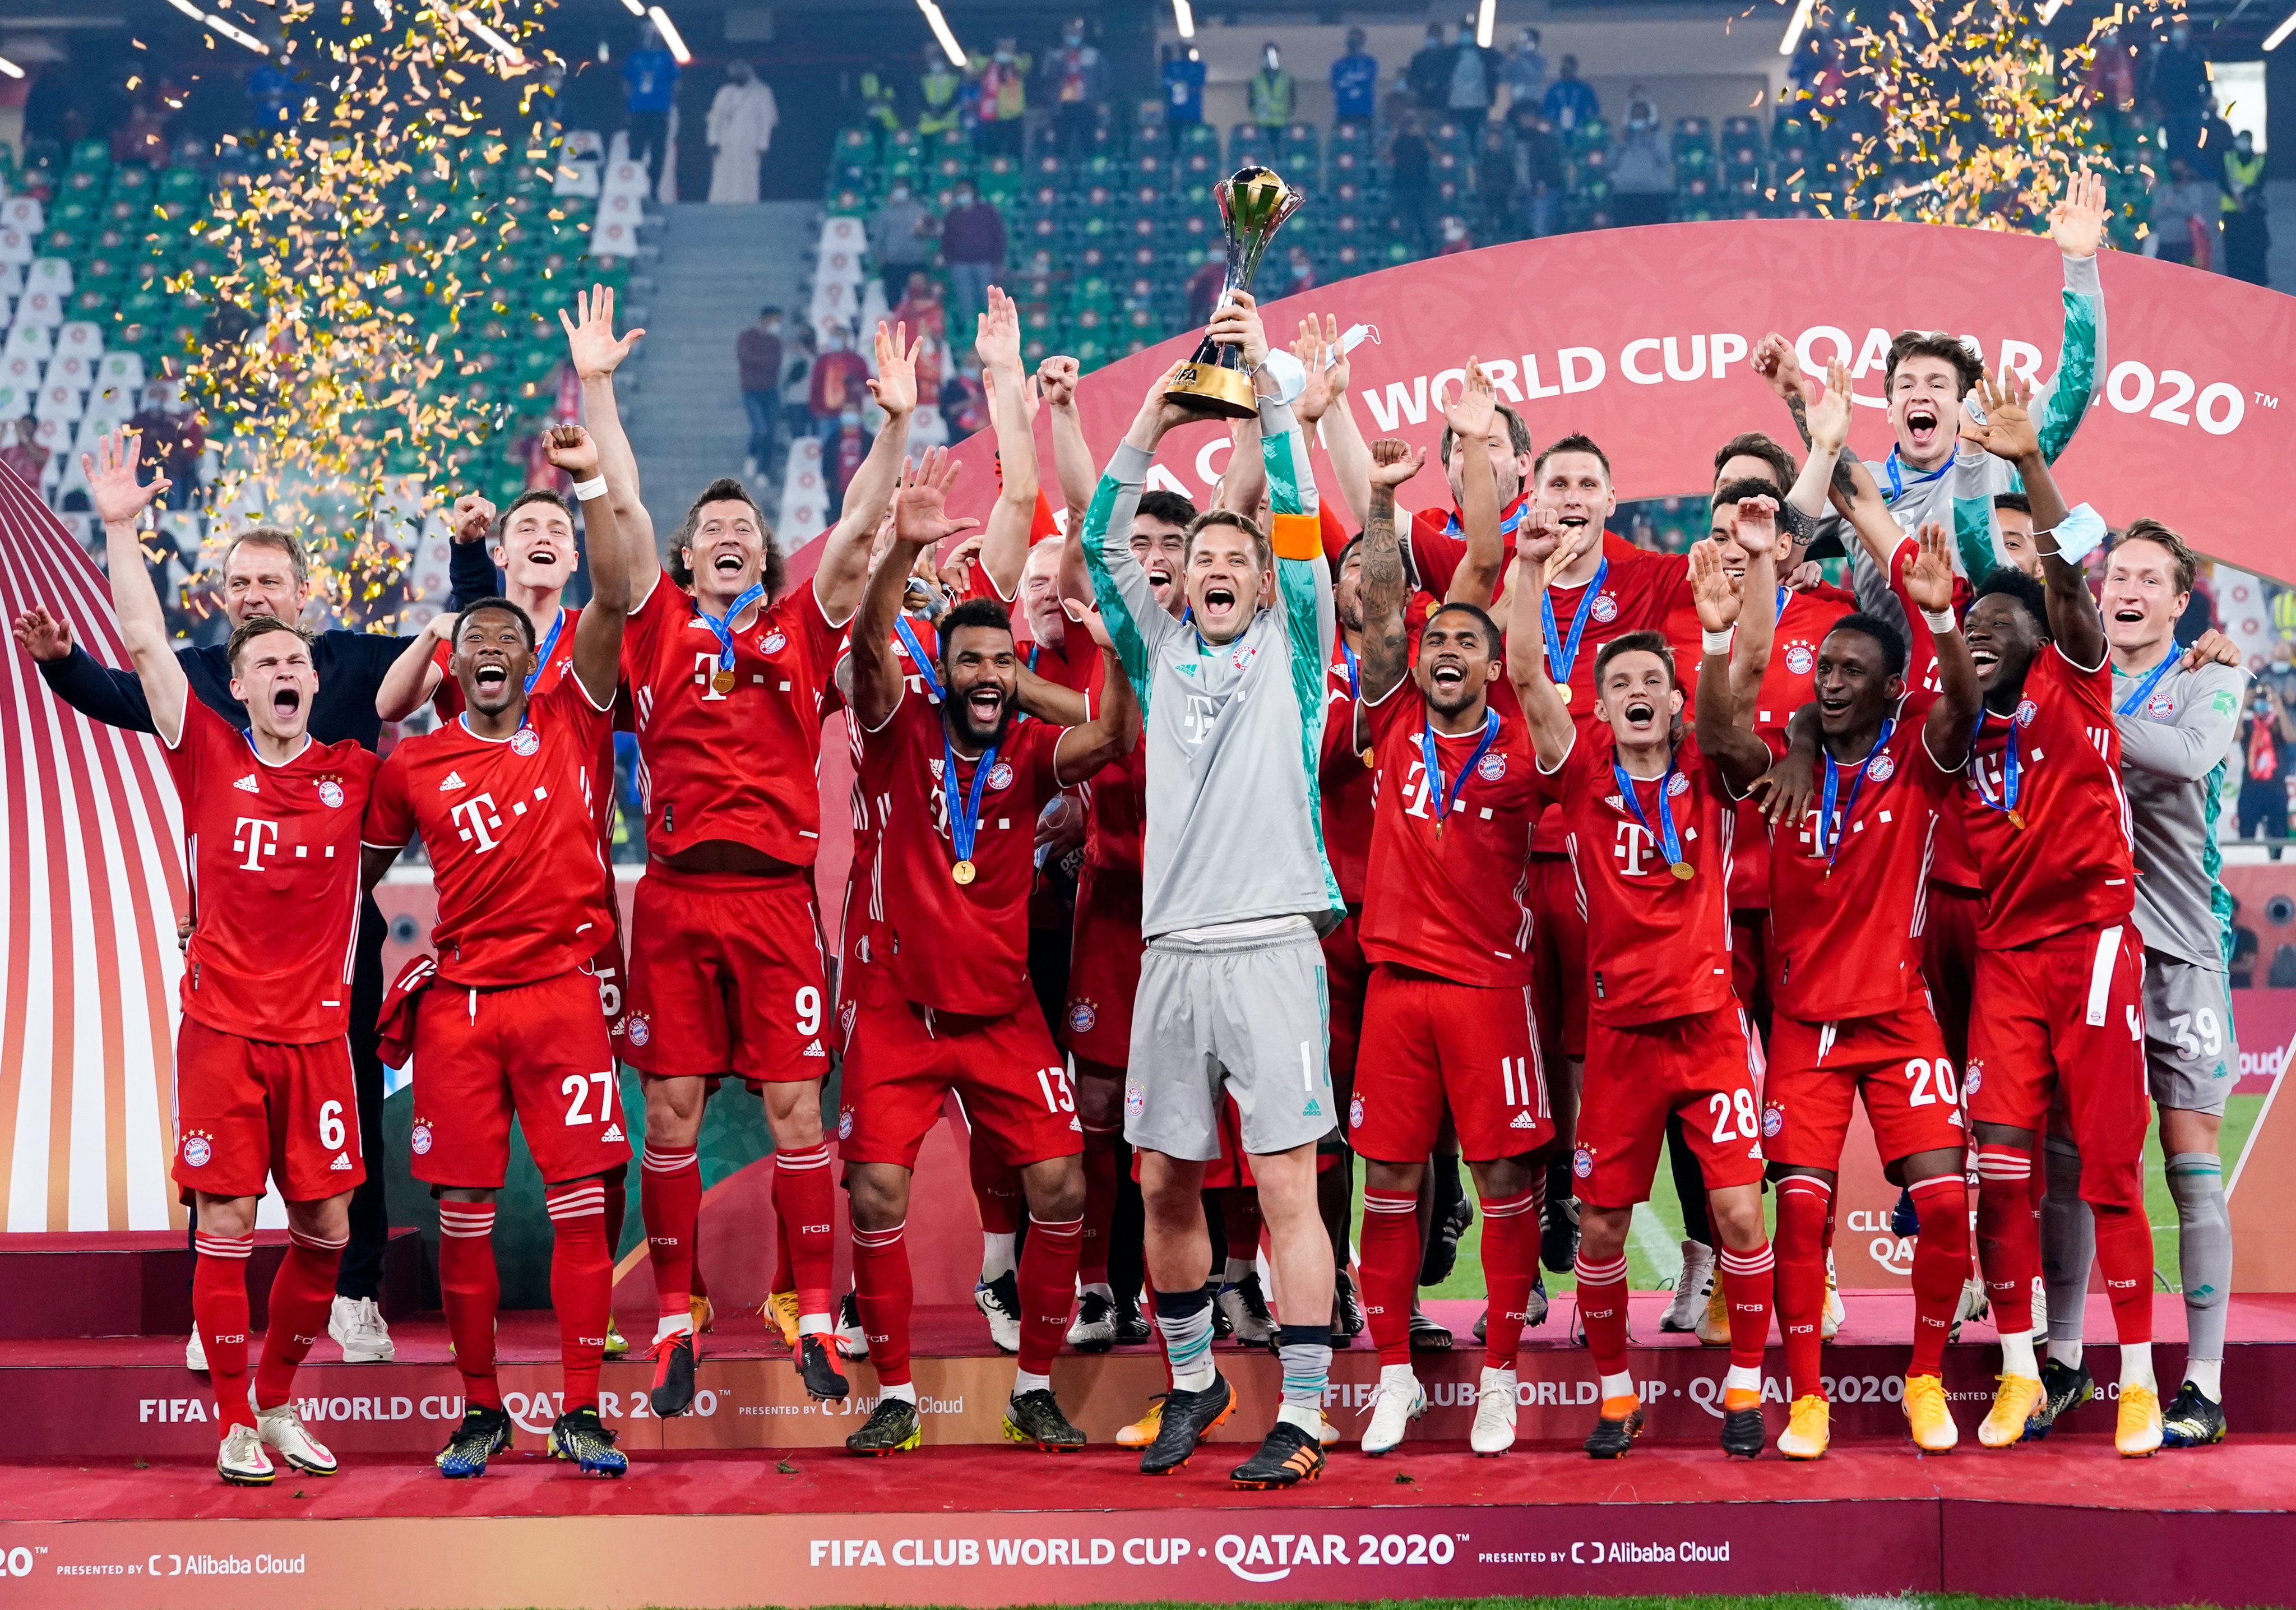 Juara Piala Dunia Antar Klub Bayern Perpanjang Dominasi Eropa